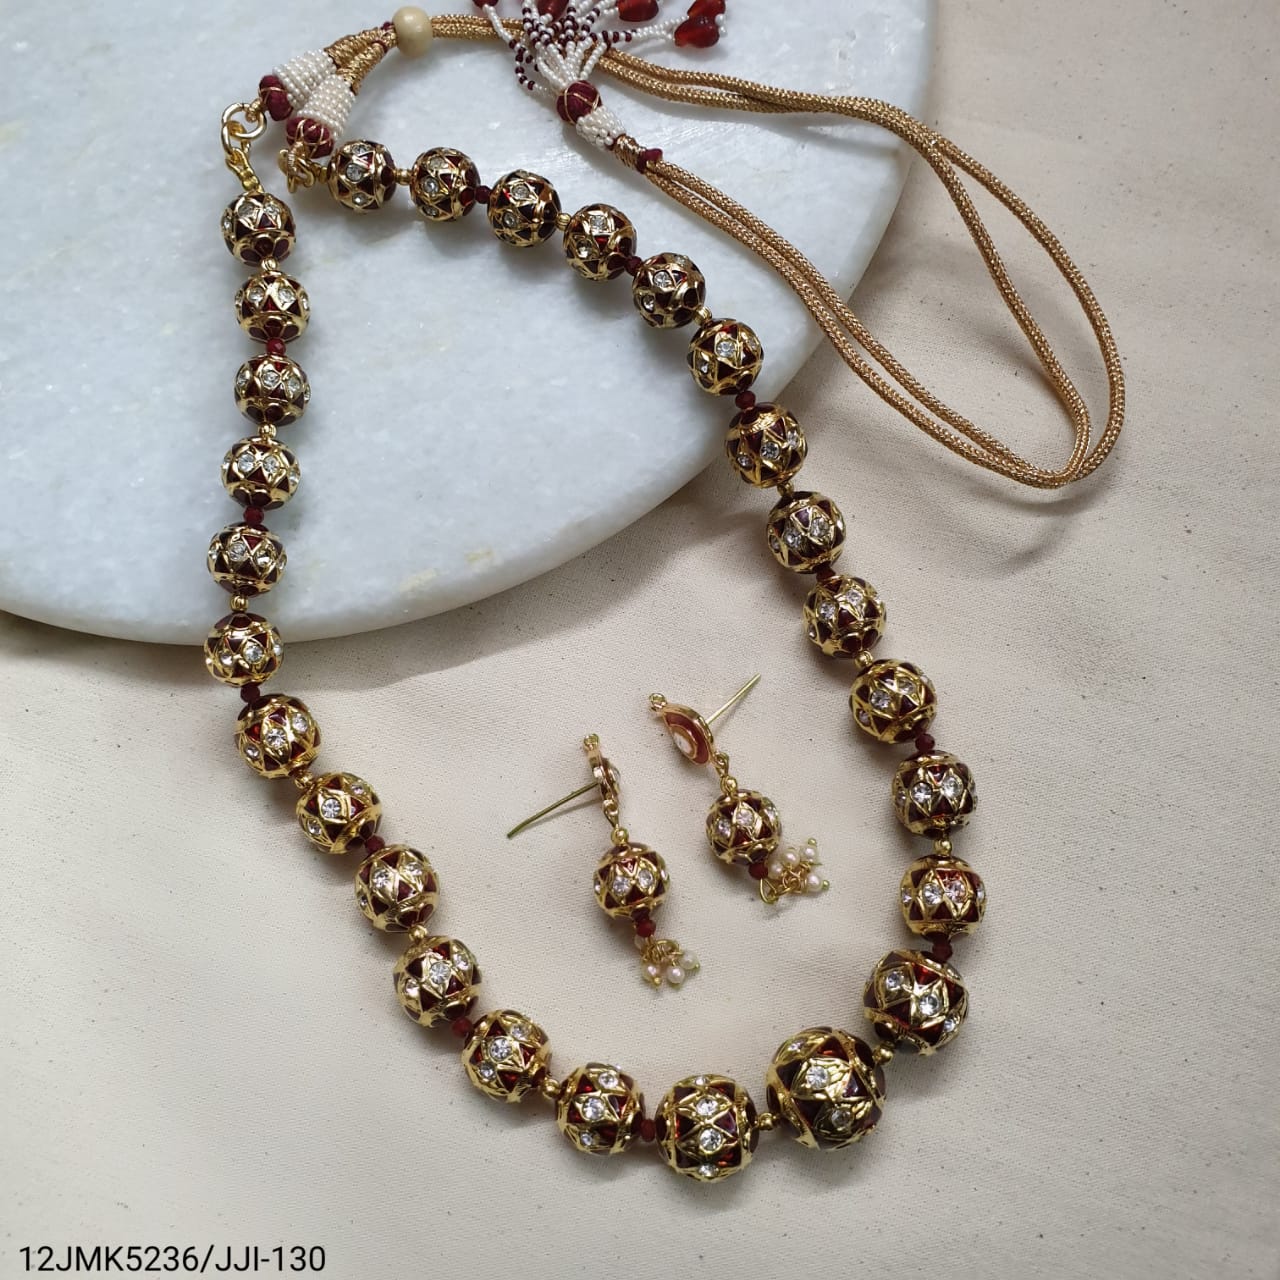 Maroon Meenakari Beaded Necklace With Earrings